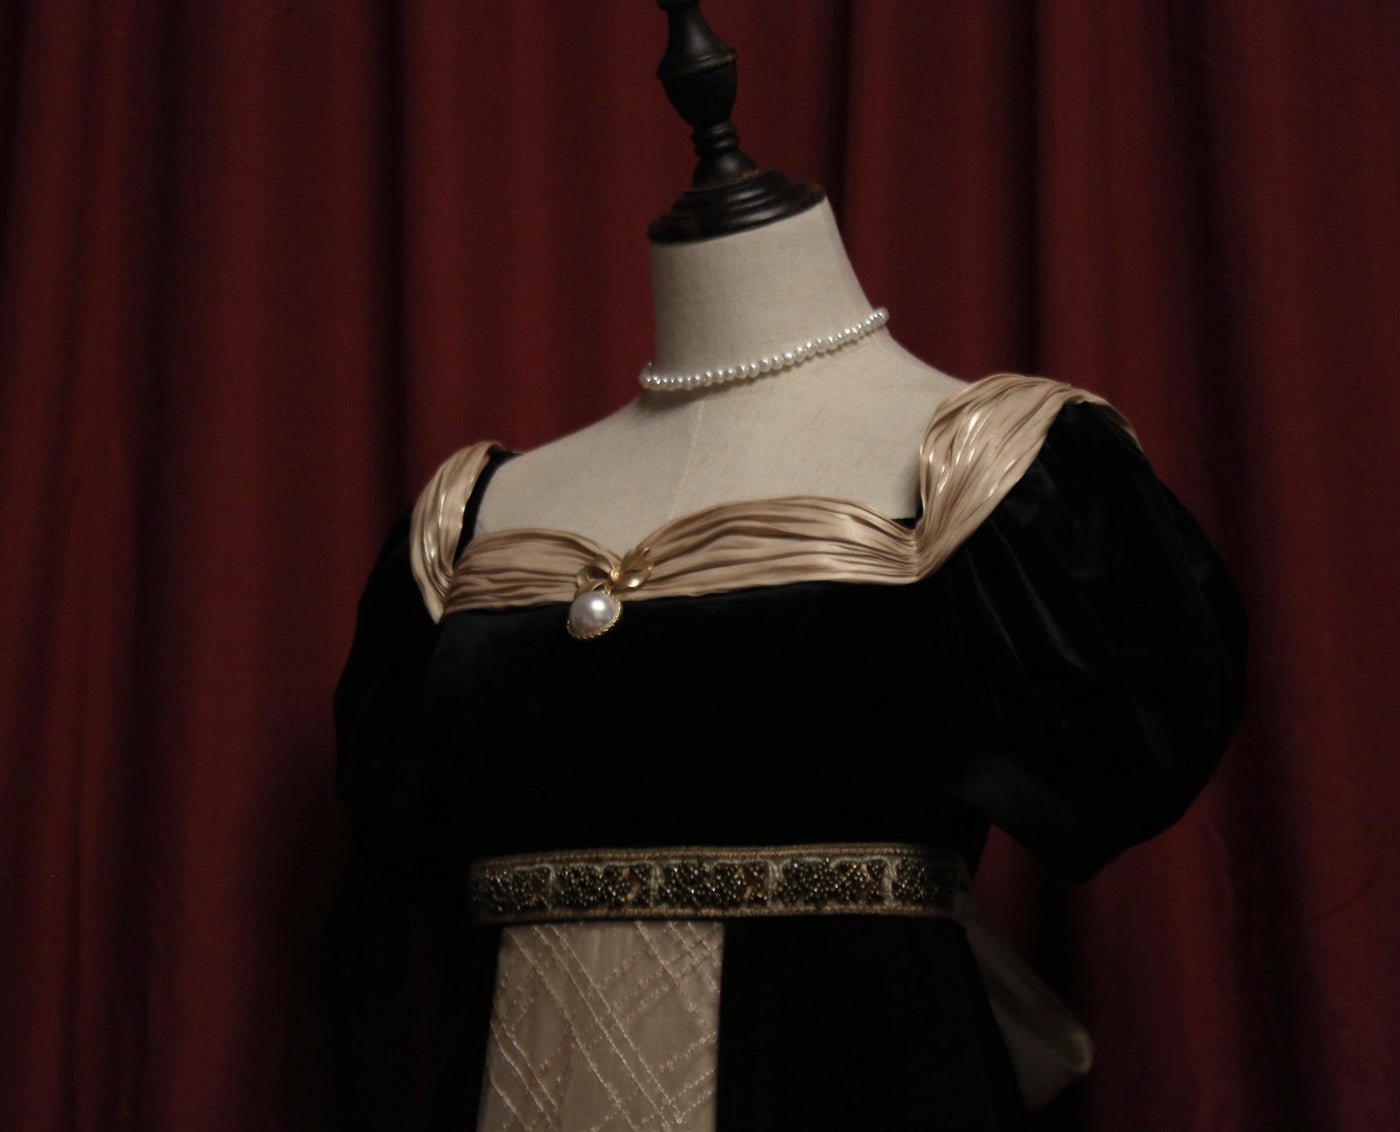 Regency Era Party Ball Gown - Bridgerton Inspired Velvet Black Dress - WonderlandByLilian